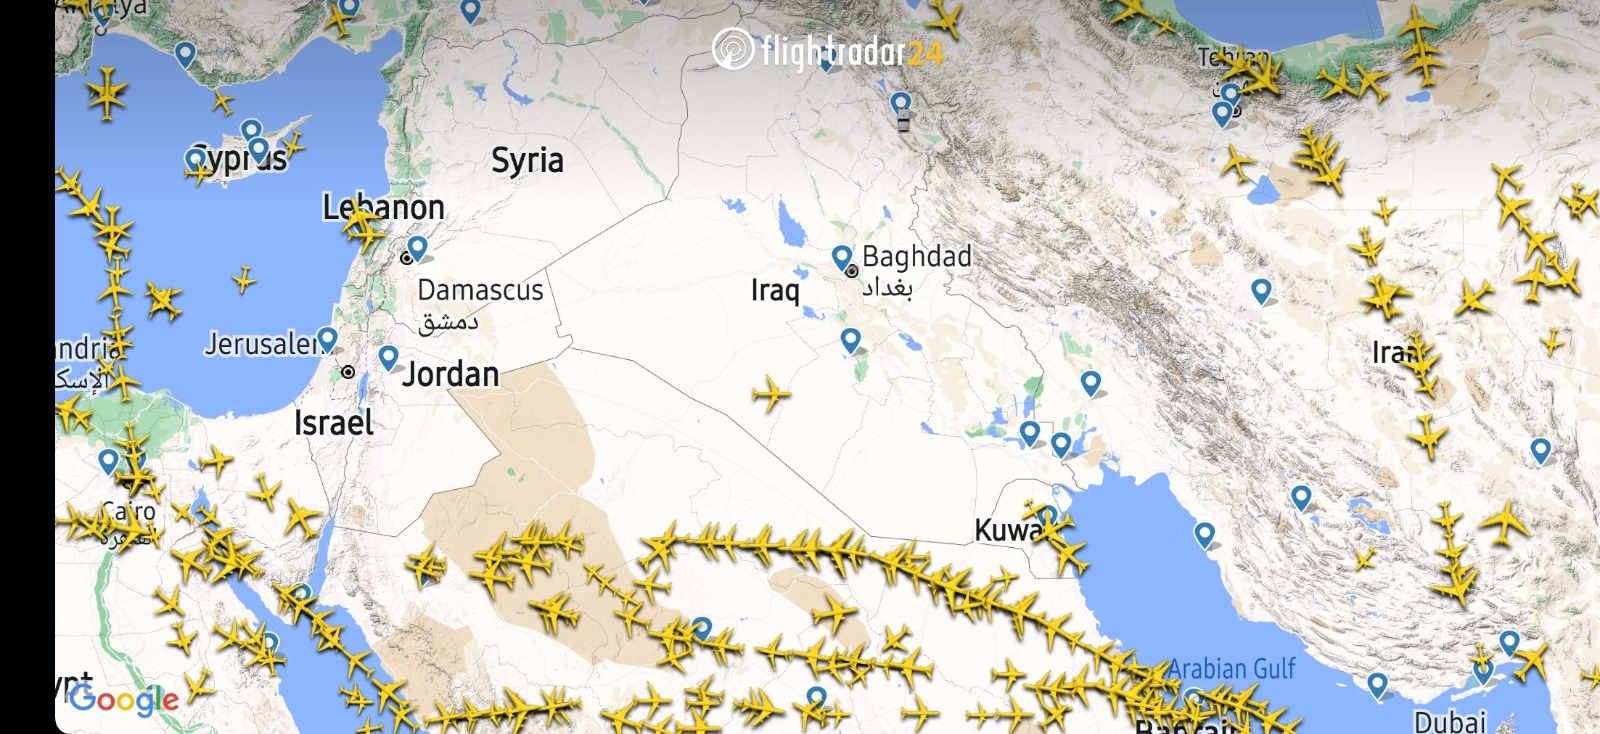 لقطة من موقع flightradar تظهر أجواء العراق والأردن وإسرائيل وسوريا خالية من حركة الطيران فجر الأحد